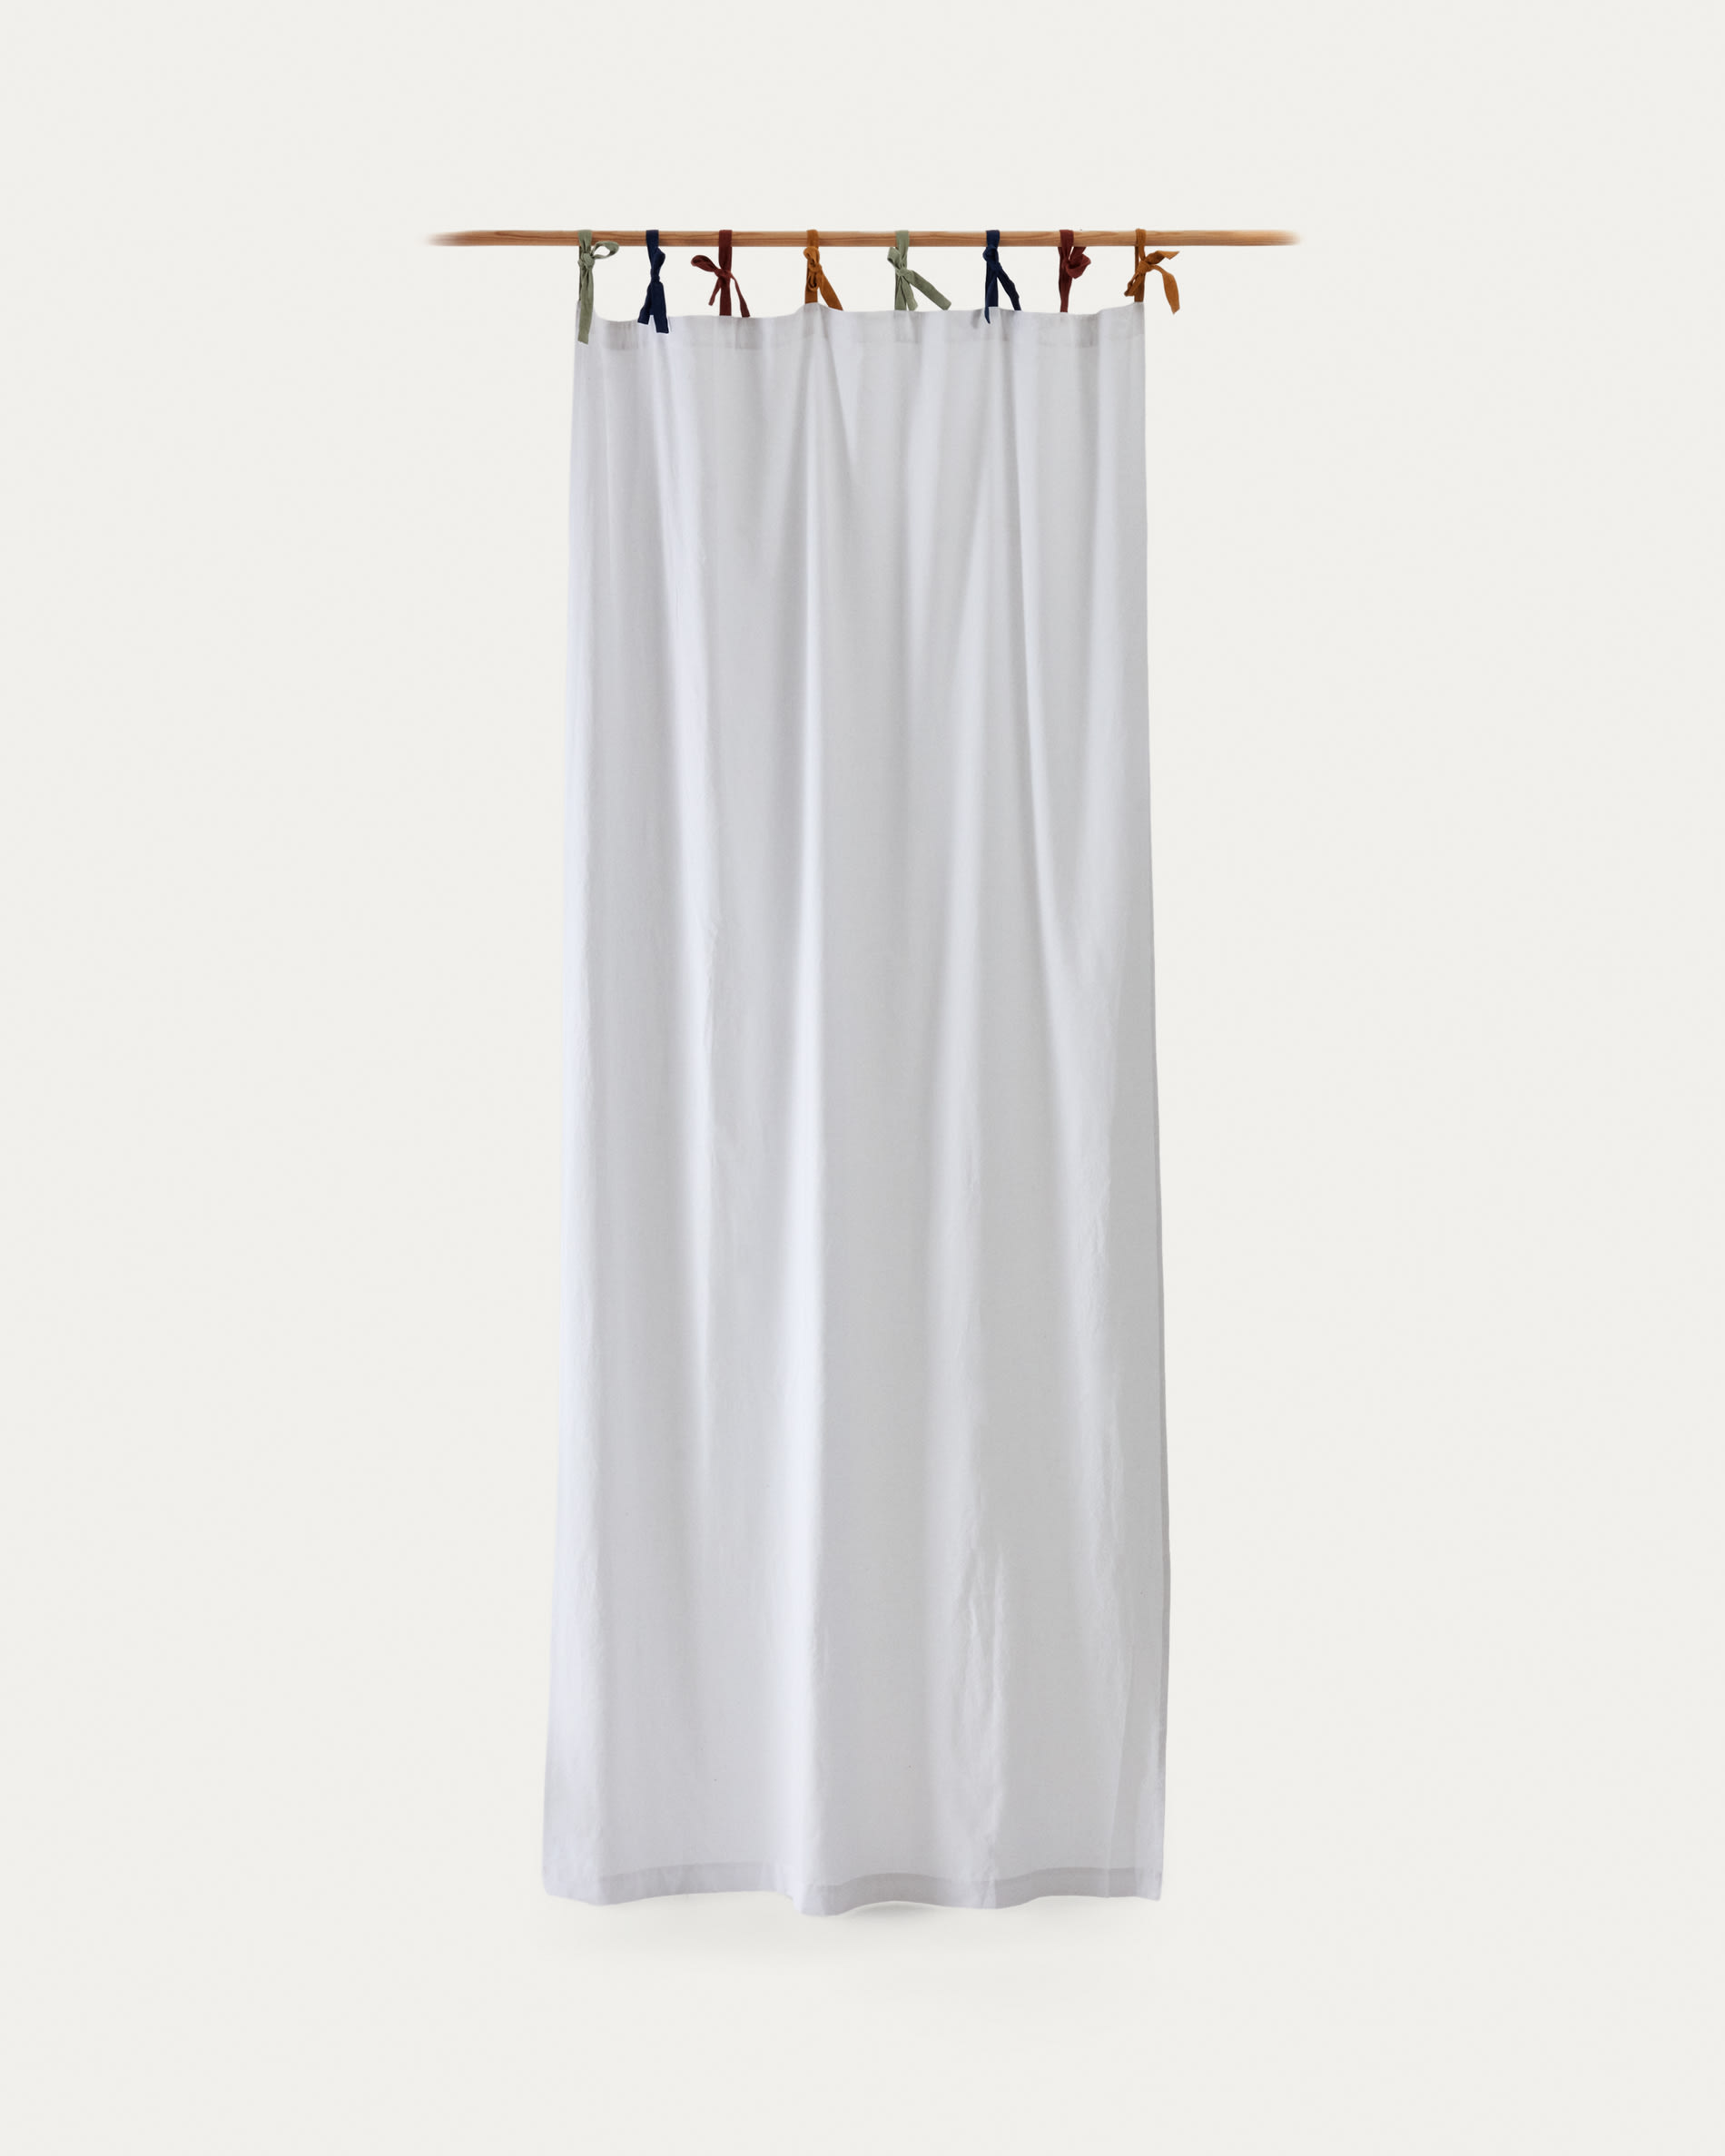 Tenda Zelda 100% cotone bianco e lacci colorati 135 x 270 cm